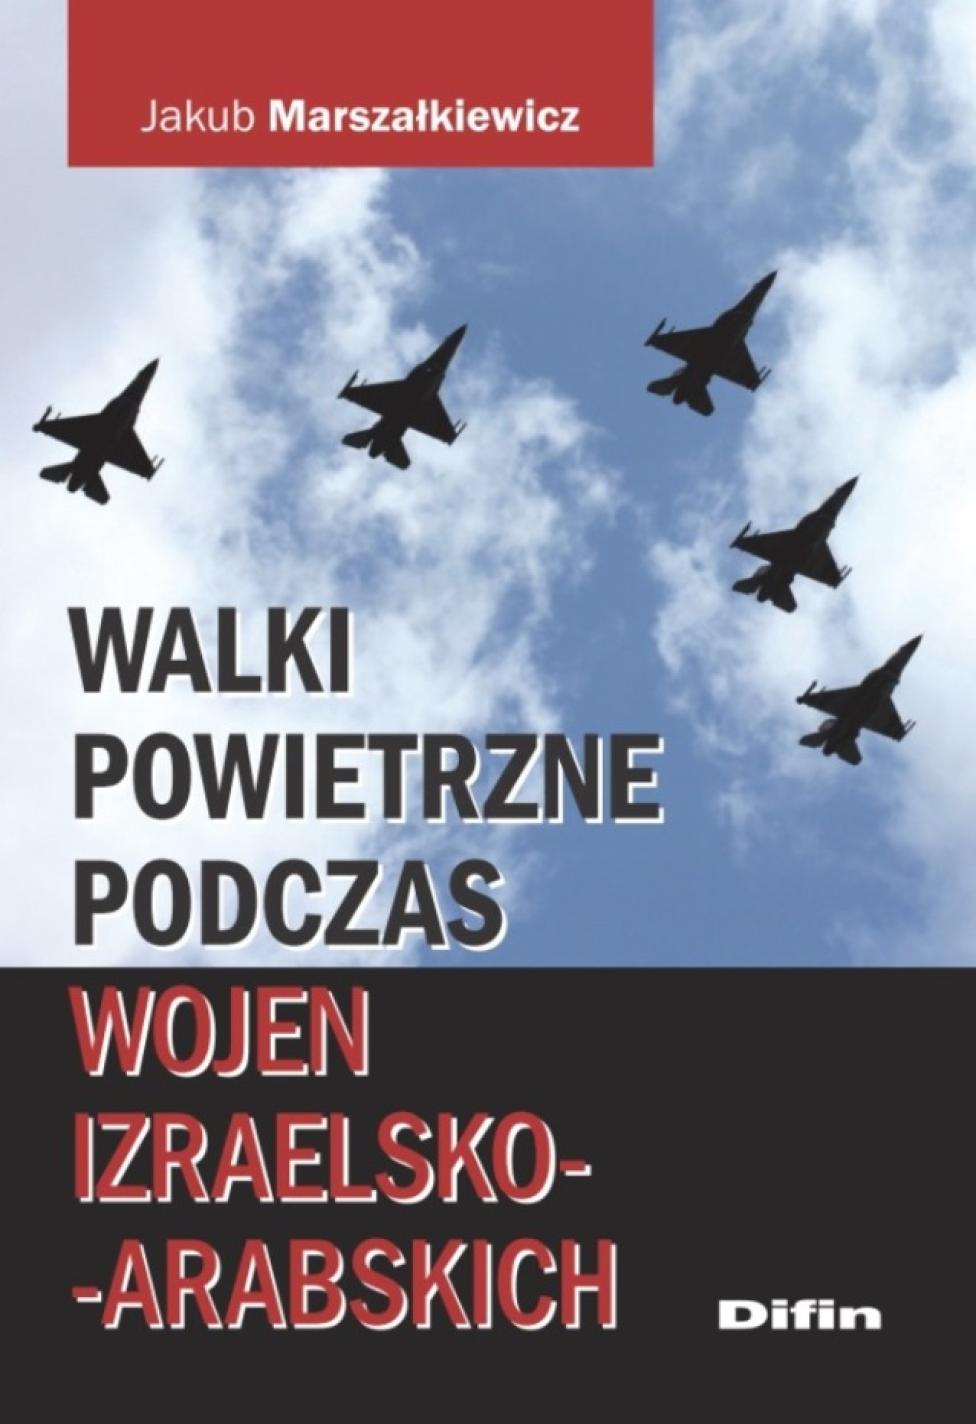 Jakub Marszałkiewicz "Walki powietrzne podczas wojen izraelsko-arabskich"